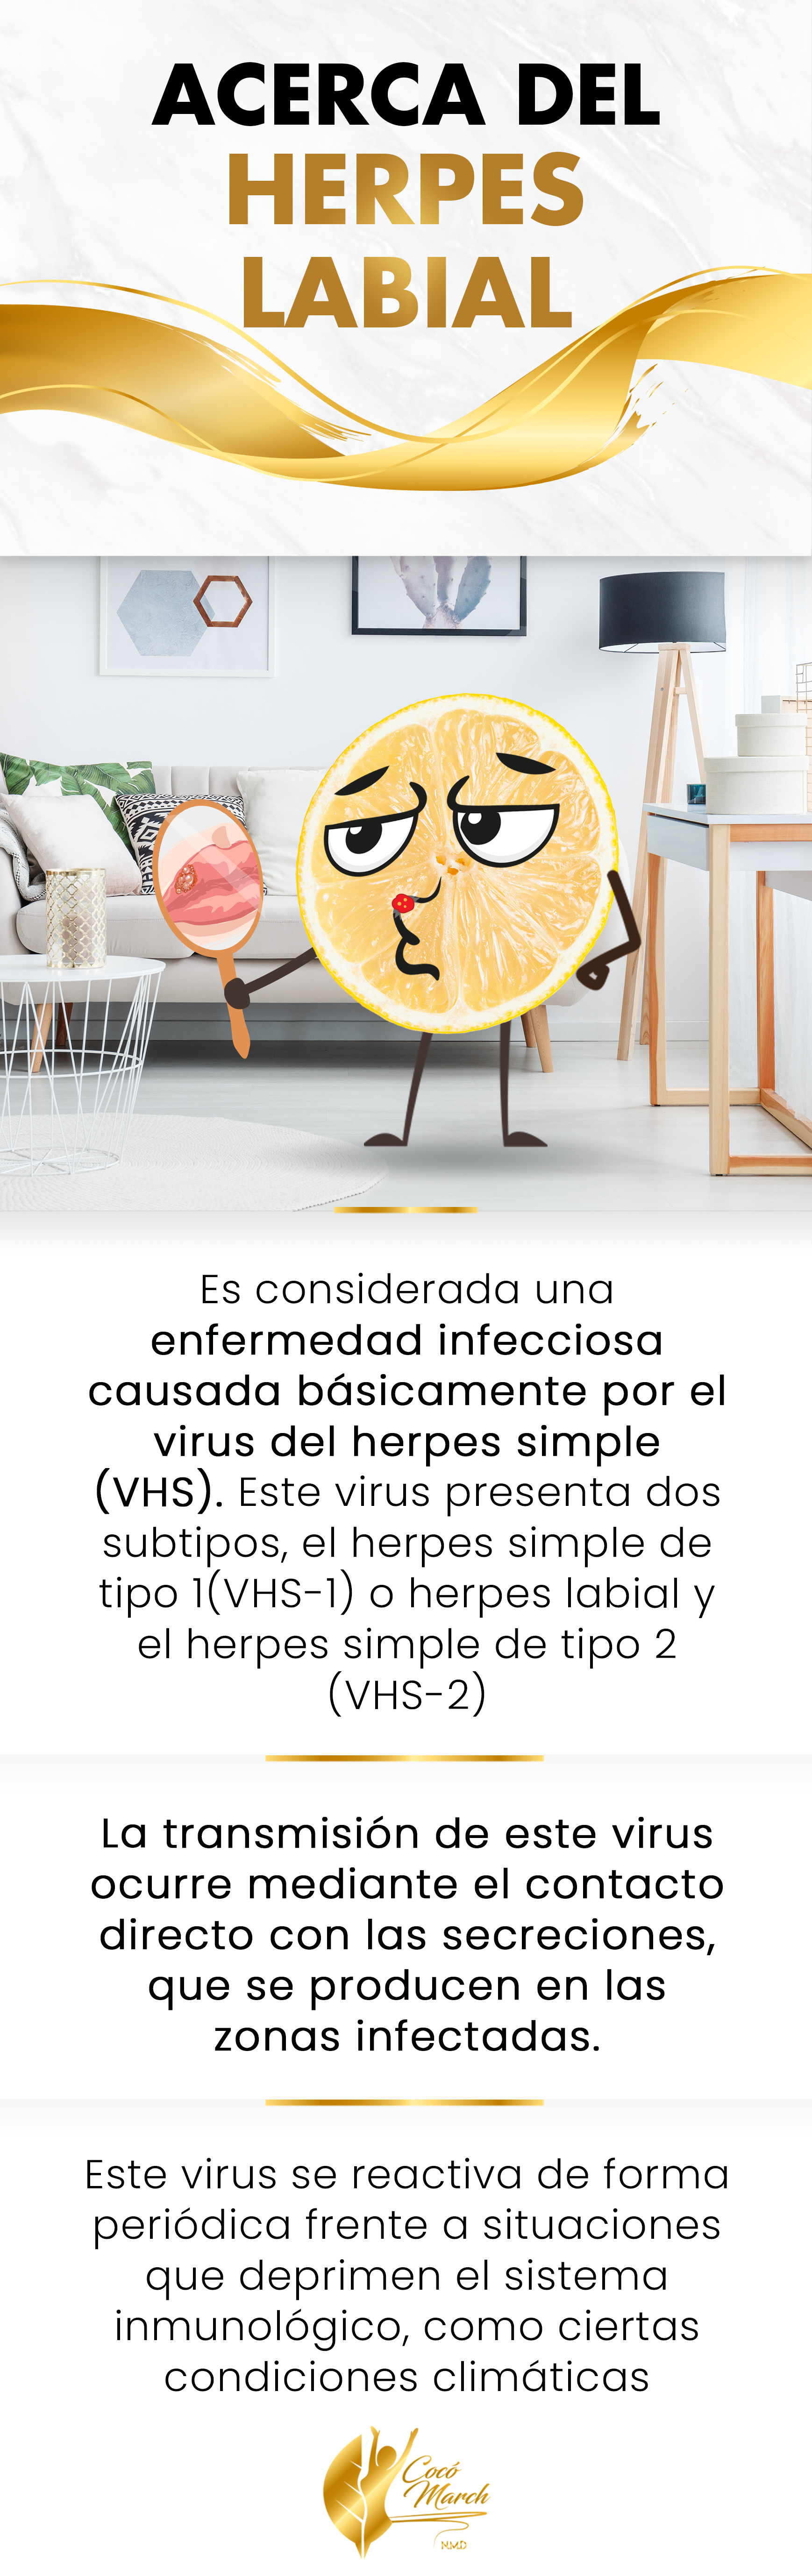 herpes-labial